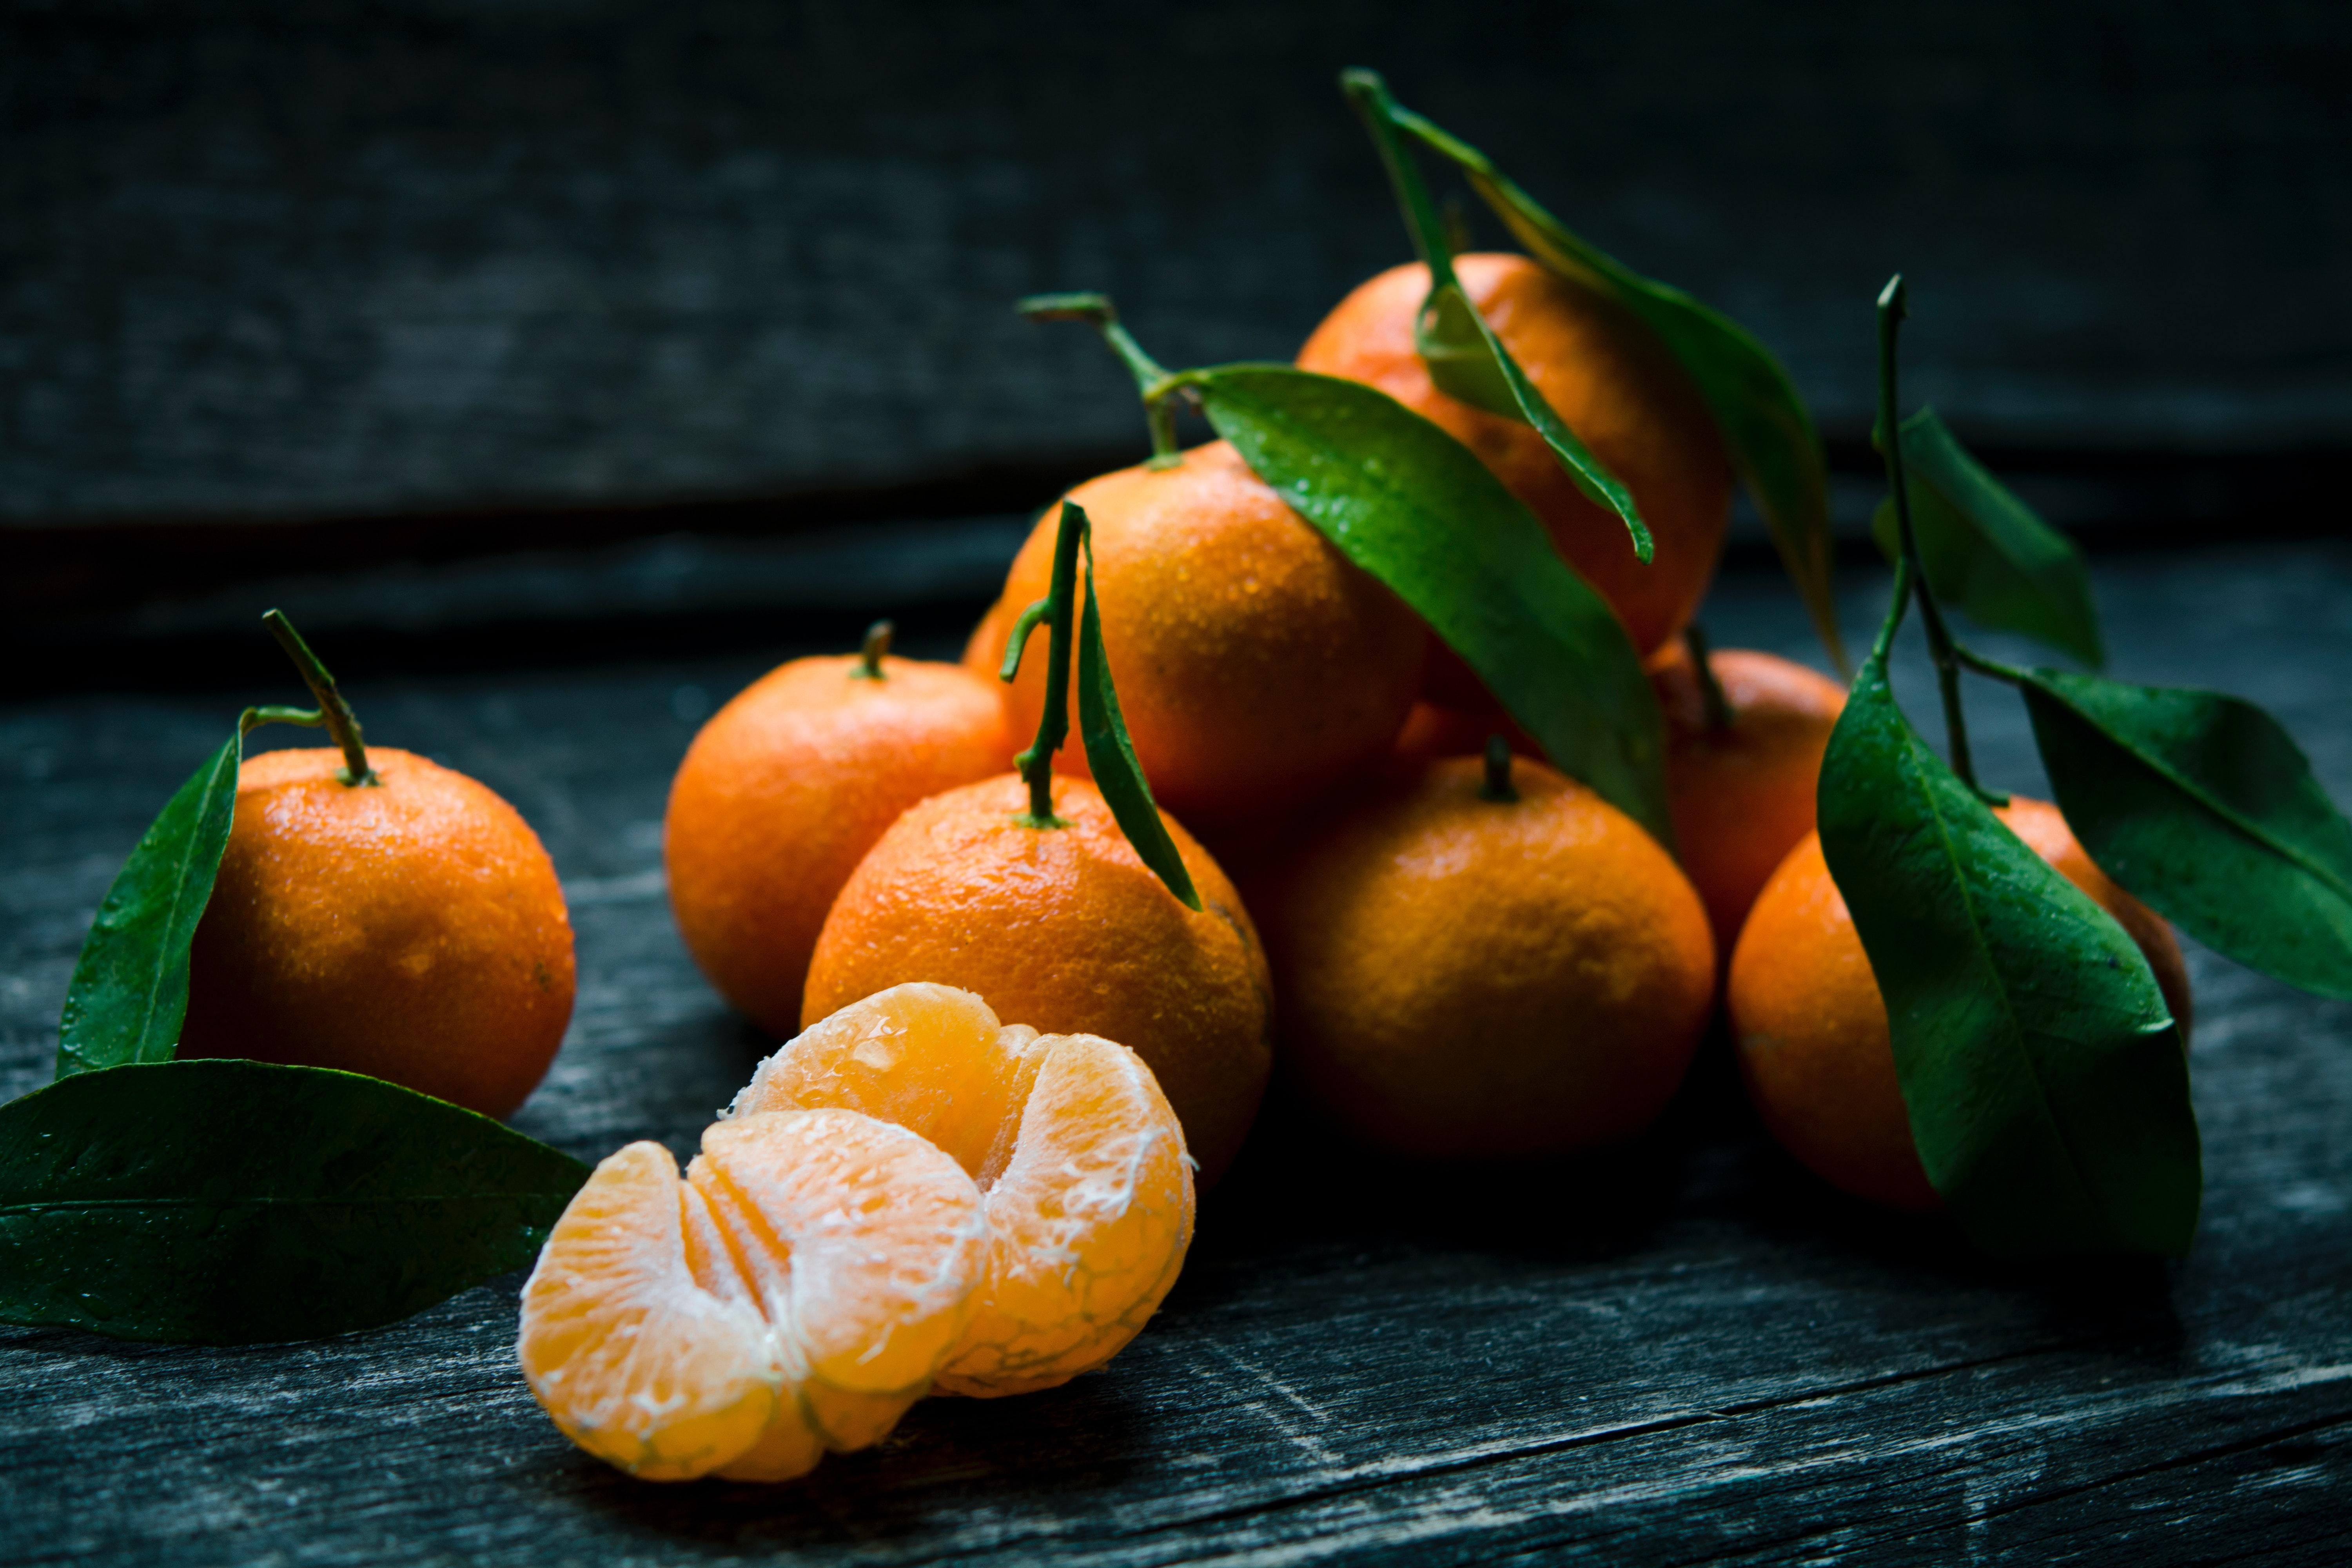 Как отличить сладкие мандарины от кислых в супермаркете: проверяем на свежесть - Идеи